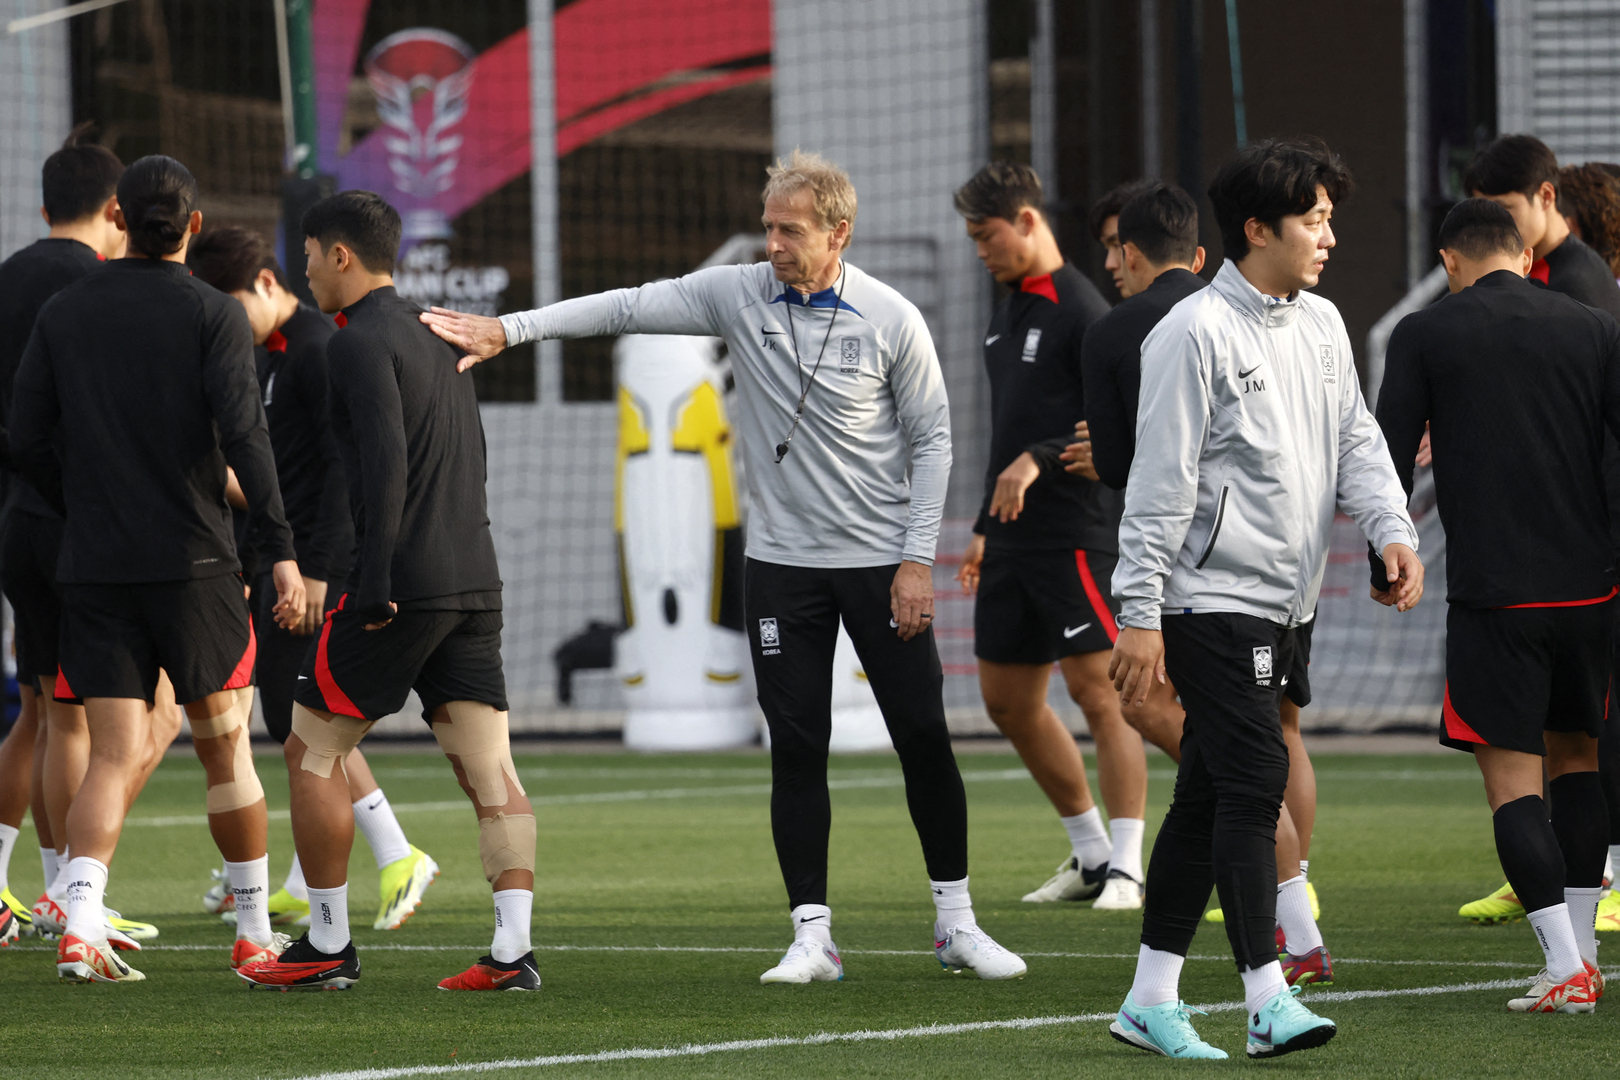 كأس آسيا وشجار سون.. سبب إقالة يورغن كلينسمان من تدريب كوريا الجنوبية